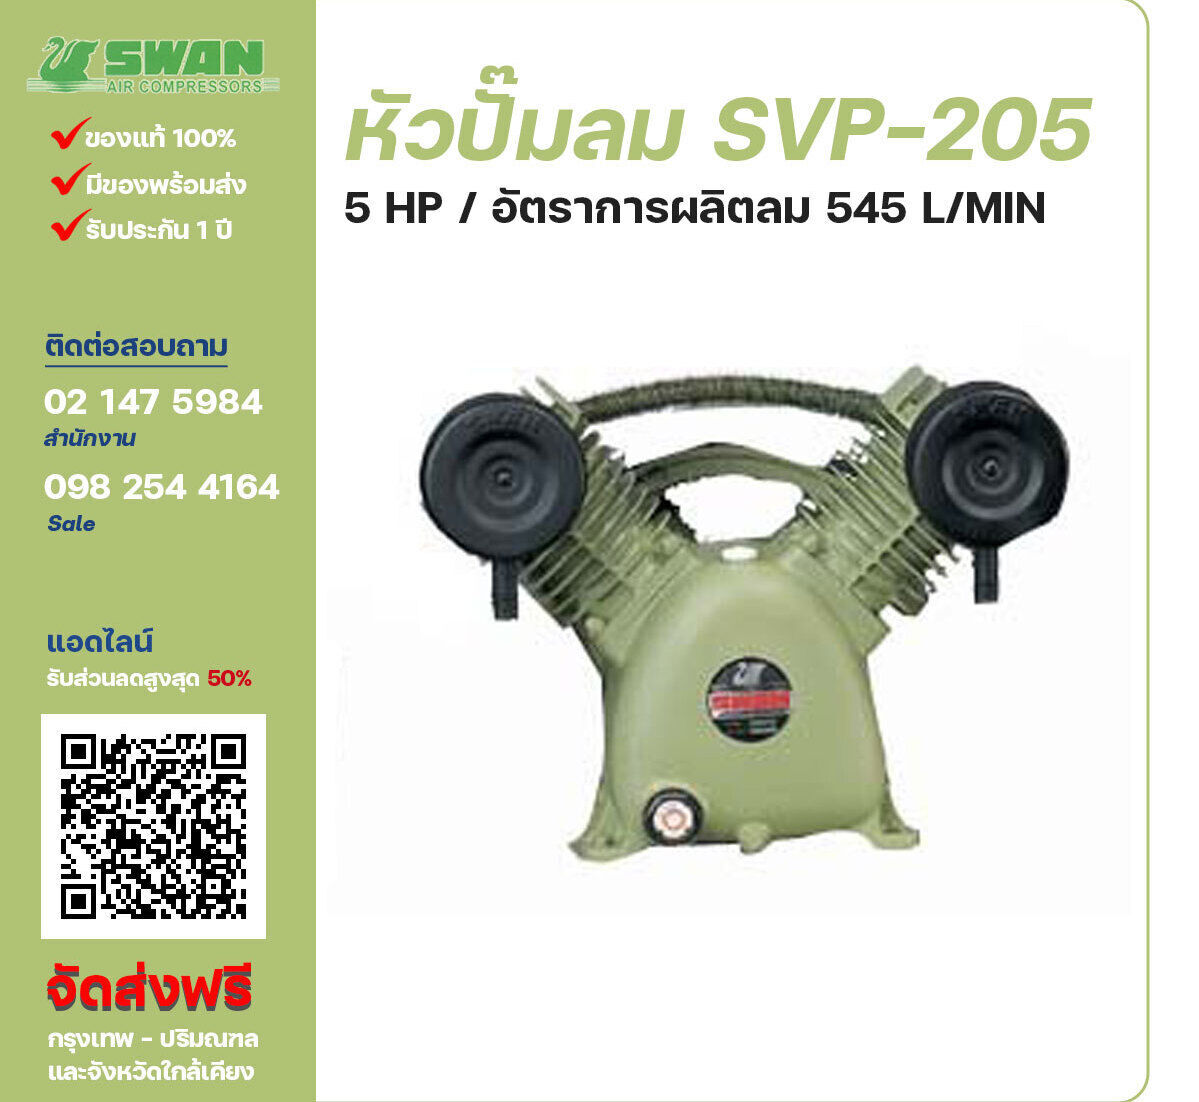 จำหน่ายหัวปั๊มลมสวอน ของแท้ 100% SWAN Bare Compressor รุ่น  SVP-205 ขนาด 5 แรงม้า อัตราการผลิตลม 545 ลิตร / นาที รับประกัน 3 เดือน ตามเงื่อนไขของบริษัทฯจัดส่งฟรี กรุงเทพ-ปริมณฑล